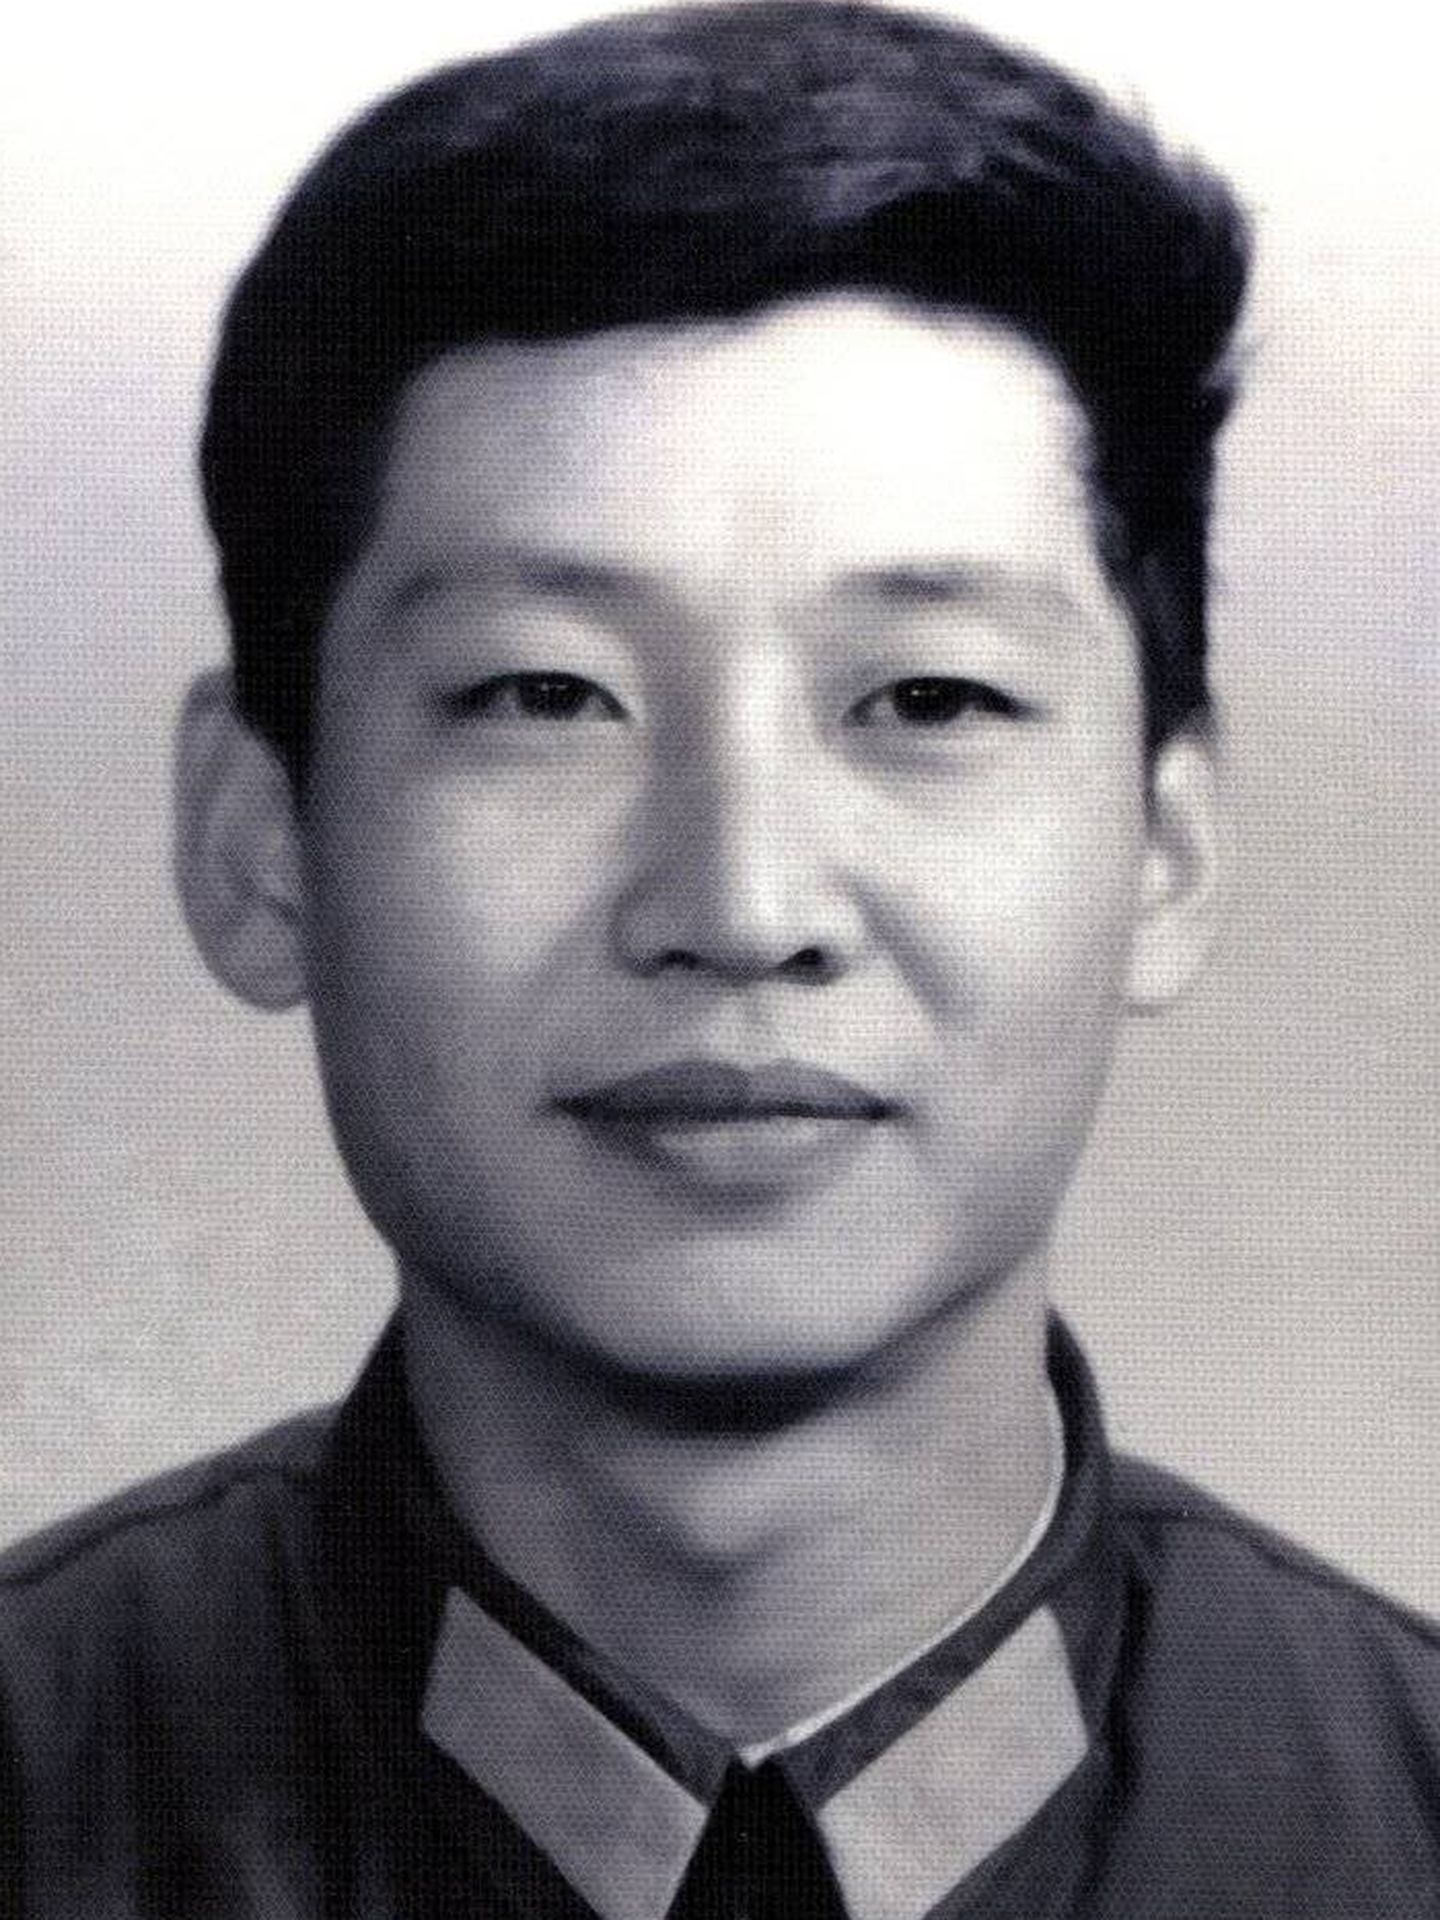 Foto de carné de Xi Jinping en 1979, con 25 años. (Xinhua Press)